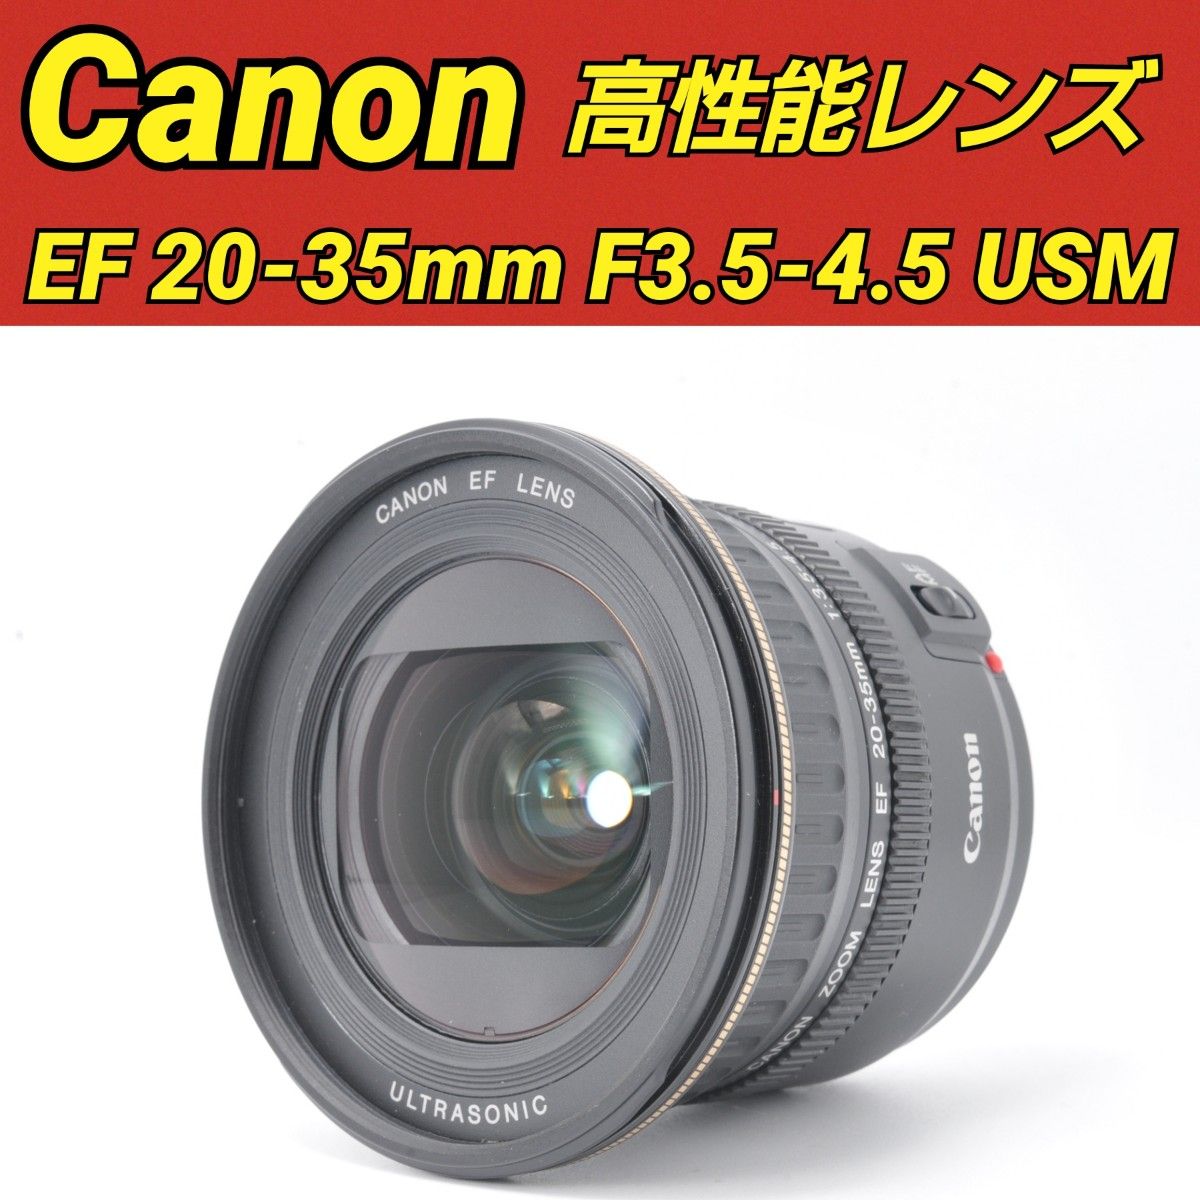 保障できる EF Canon EF CANON f3 EF 20-35mm F3.5-4.5 20-35mm 広角